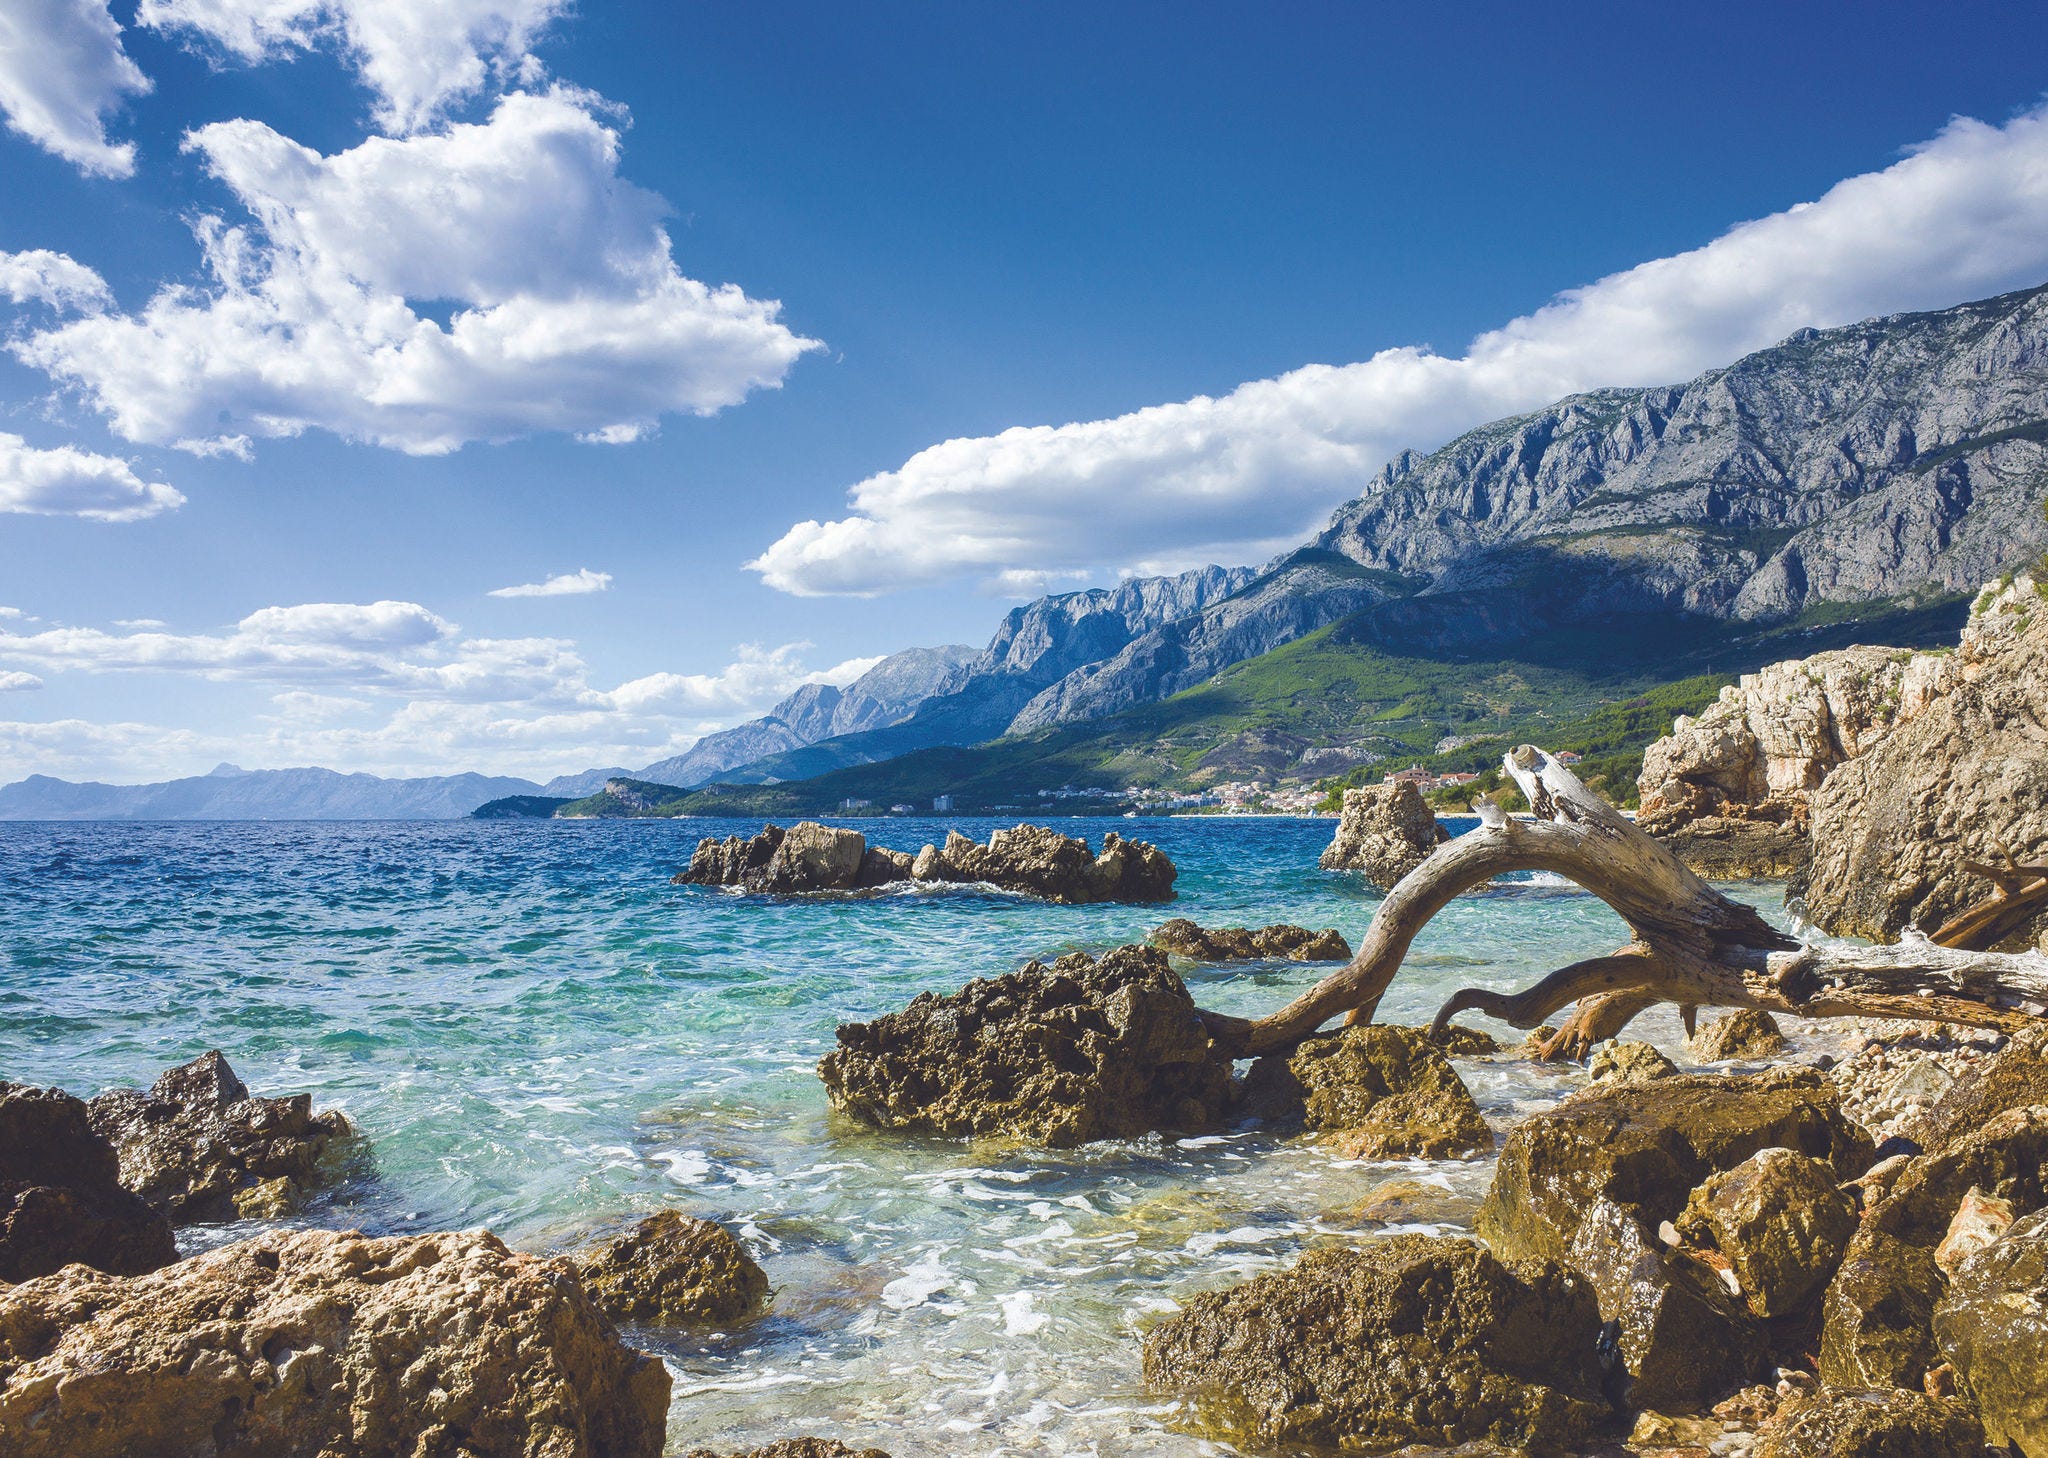 Croatia's coastline